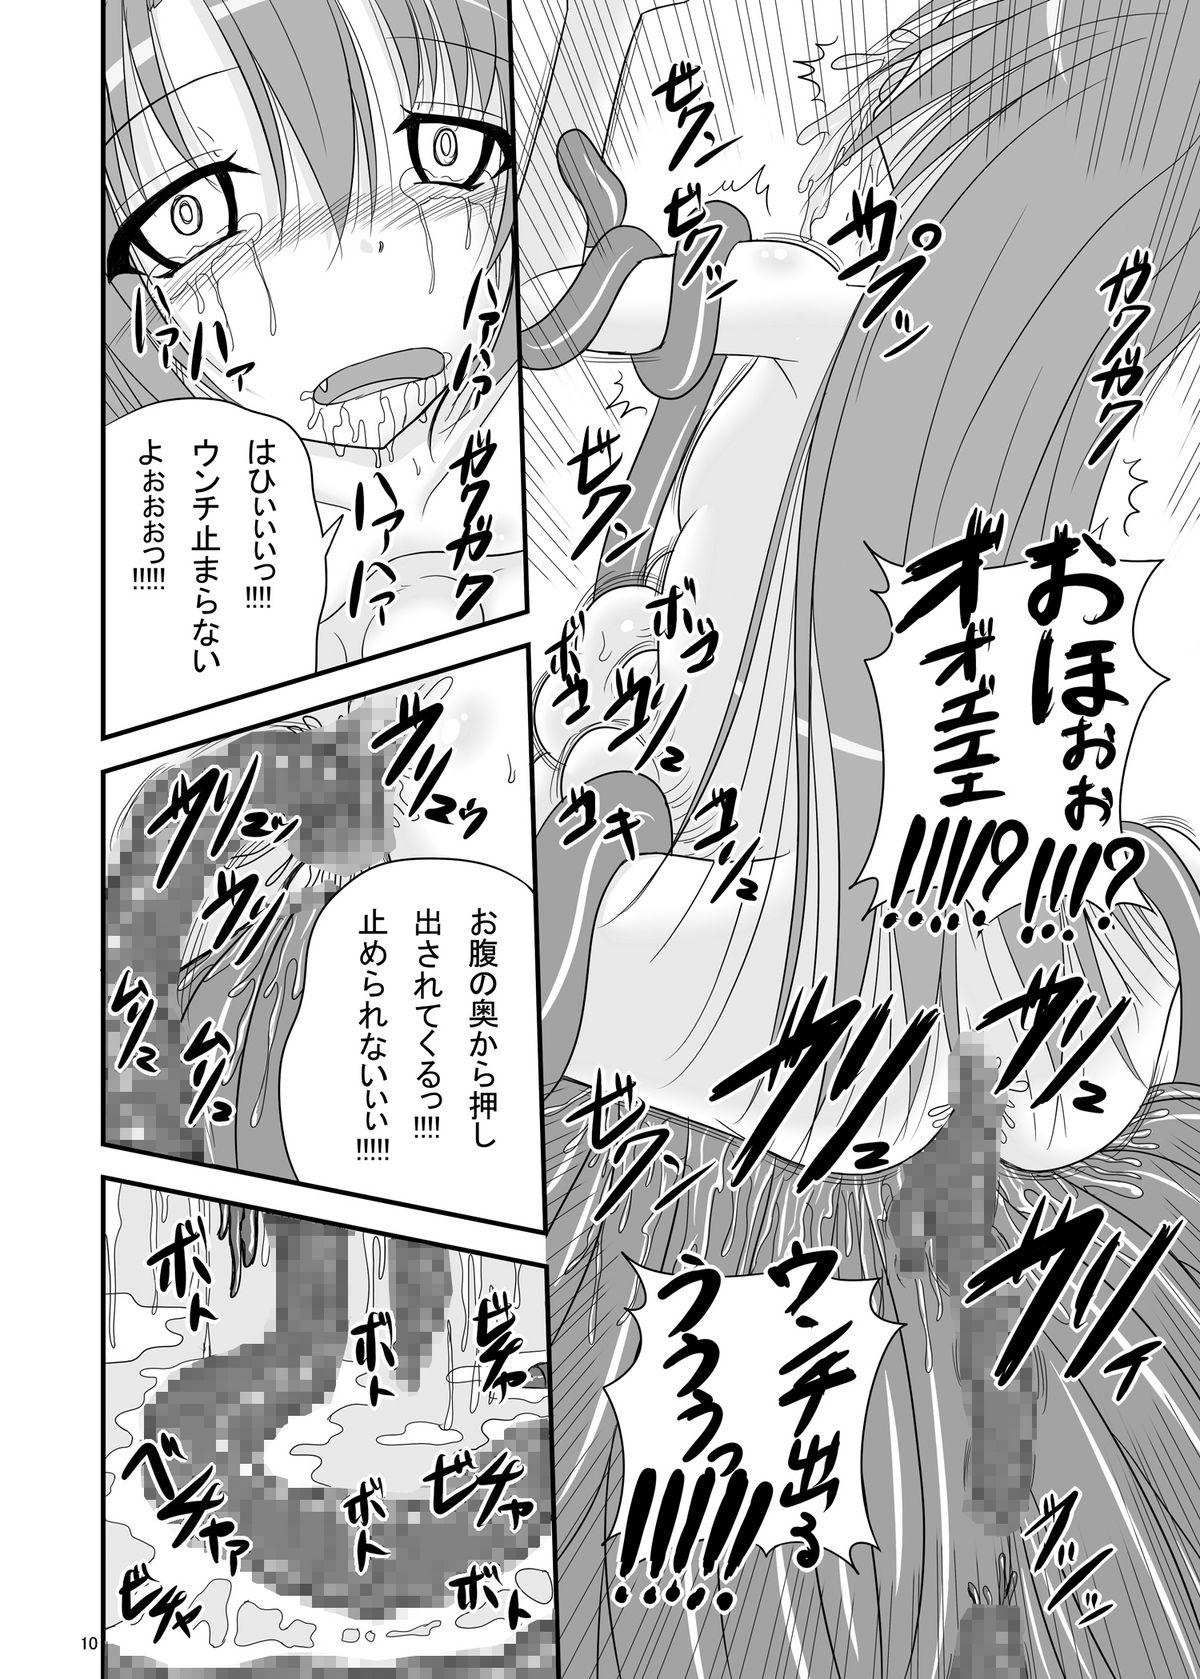 Follando Itsuka Zenshin Funsha no Kuso Usagi - Itsuka tenma no kuro usagi Dad - Page 10